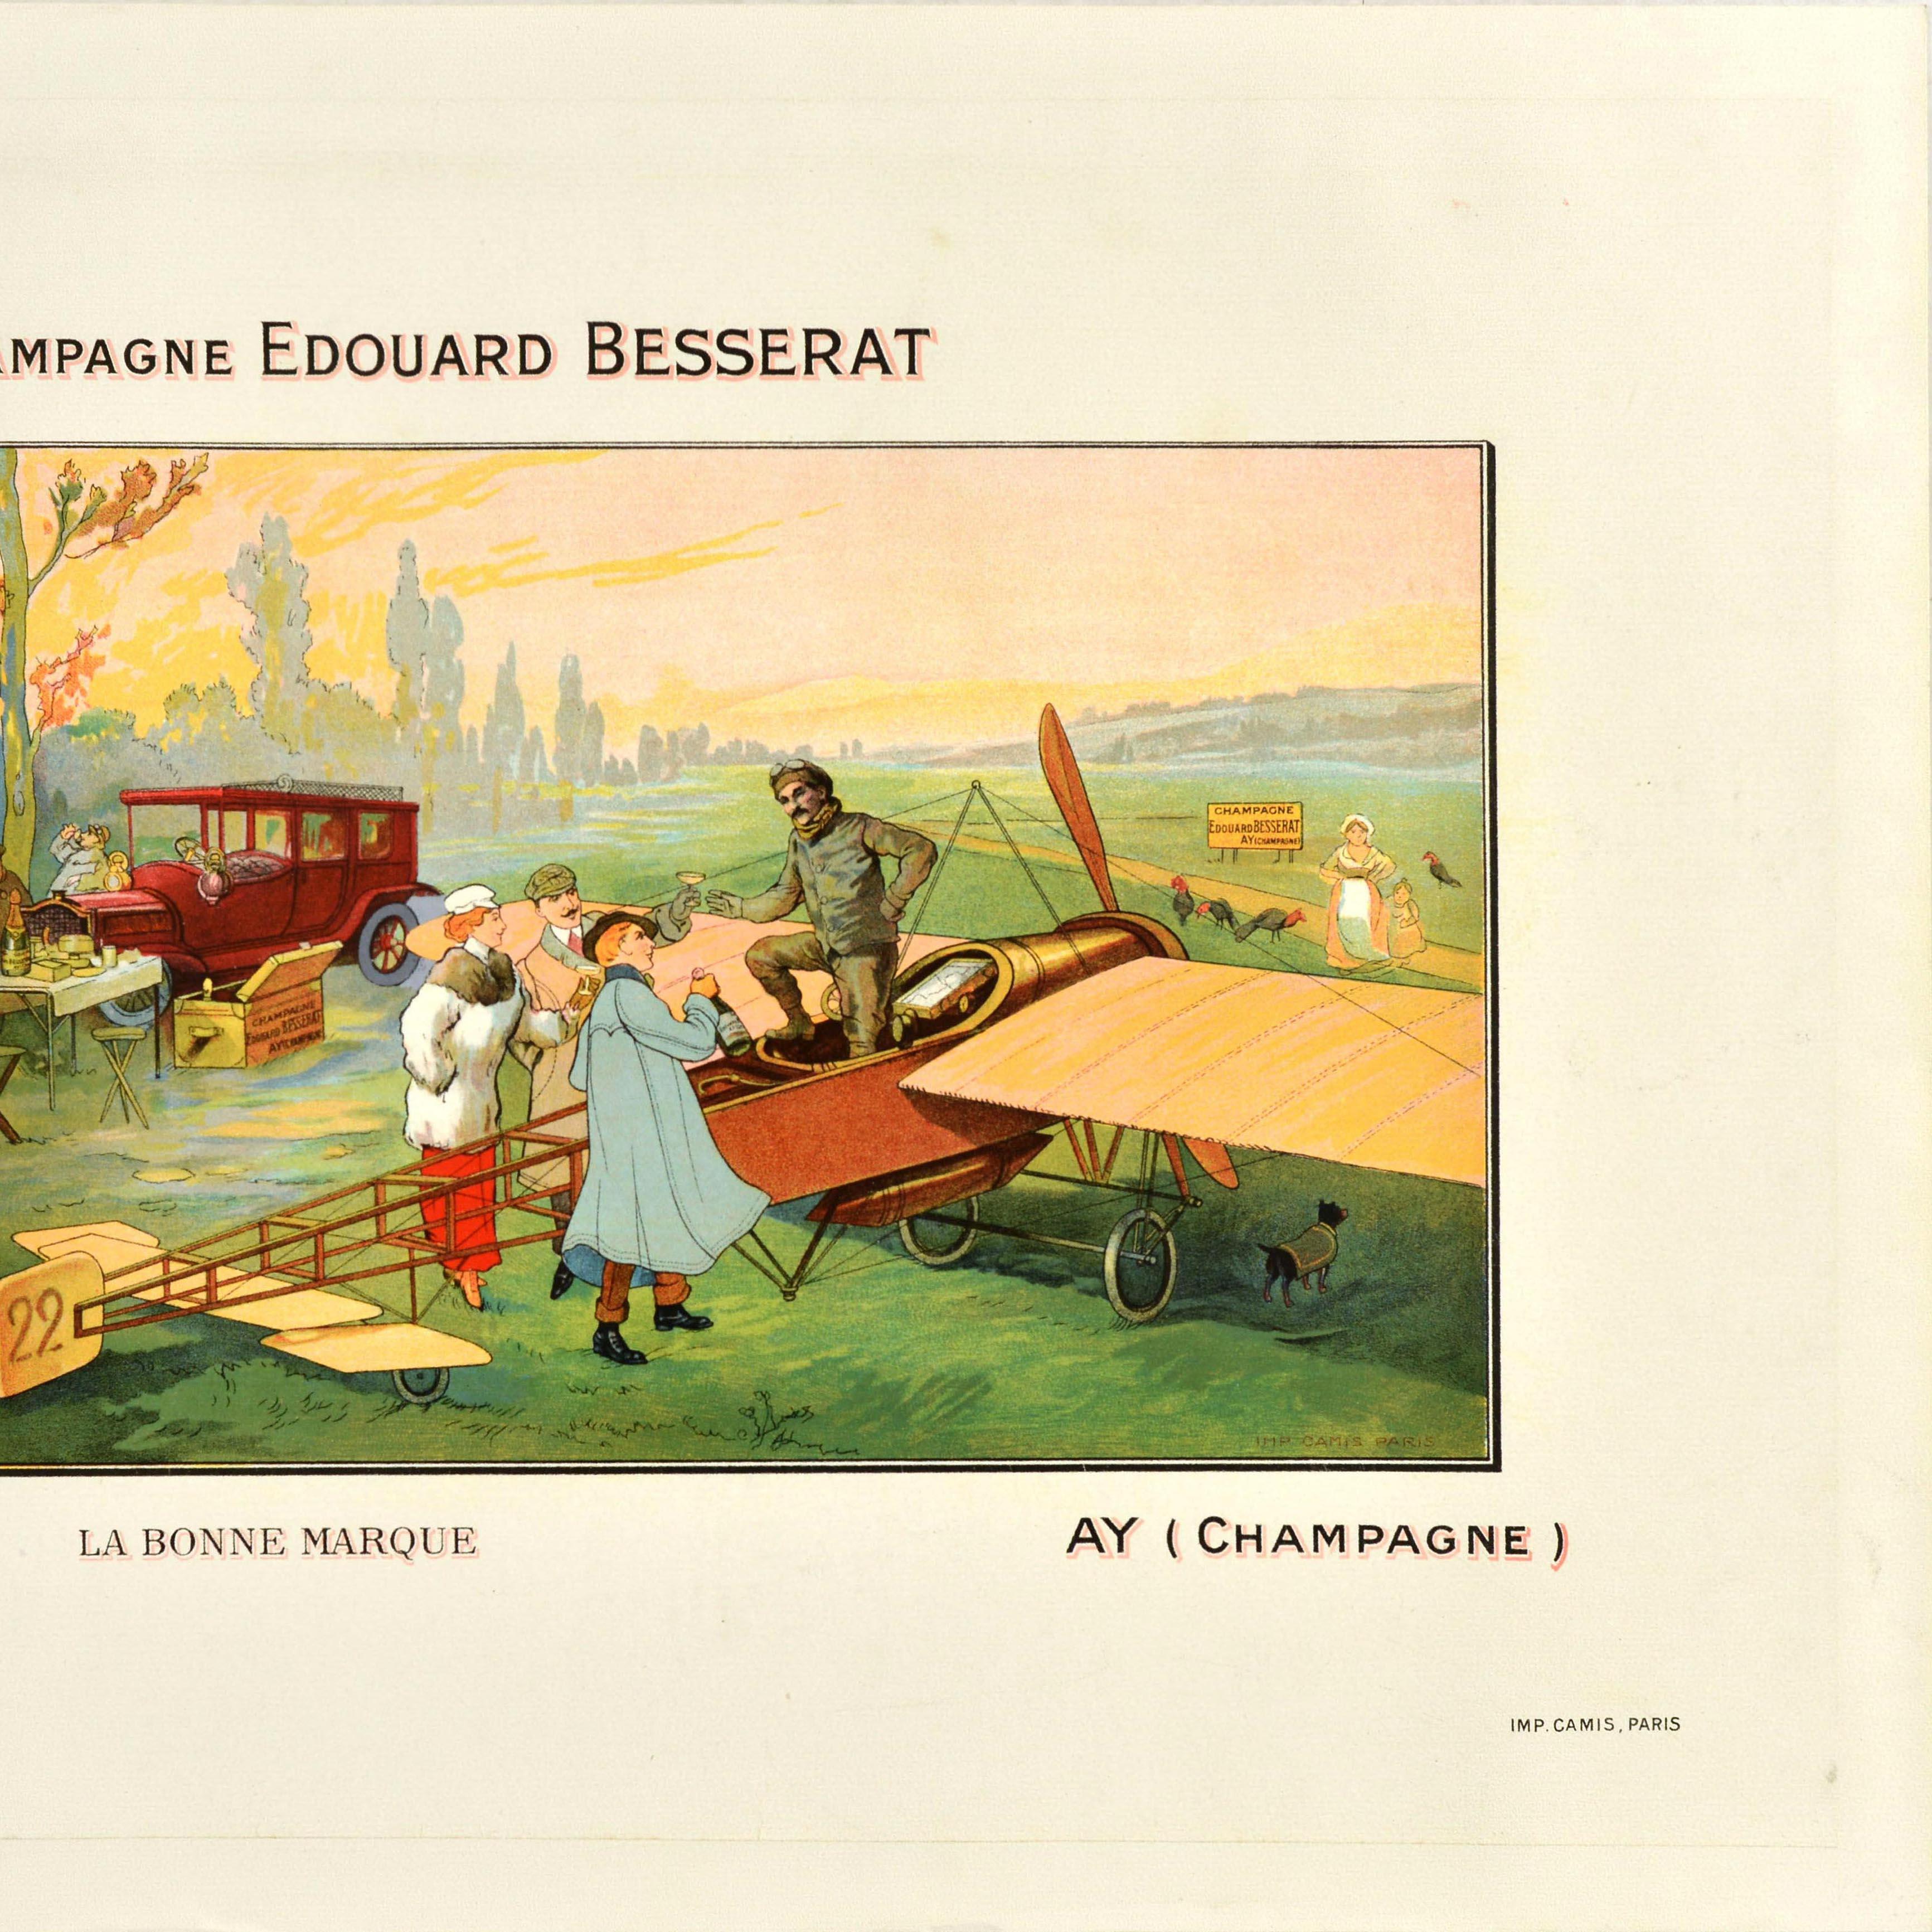 Originales antikes Getränke-Werbeplakat für Champagne Edouard Besserat la bonne marque Ay (Champagne), mit einer Illustration eines frühen Eindeckers, die den Piloten zeigt, wie er ein Glas Champagner mit einer Gruppe von Menschen in der Landschaft